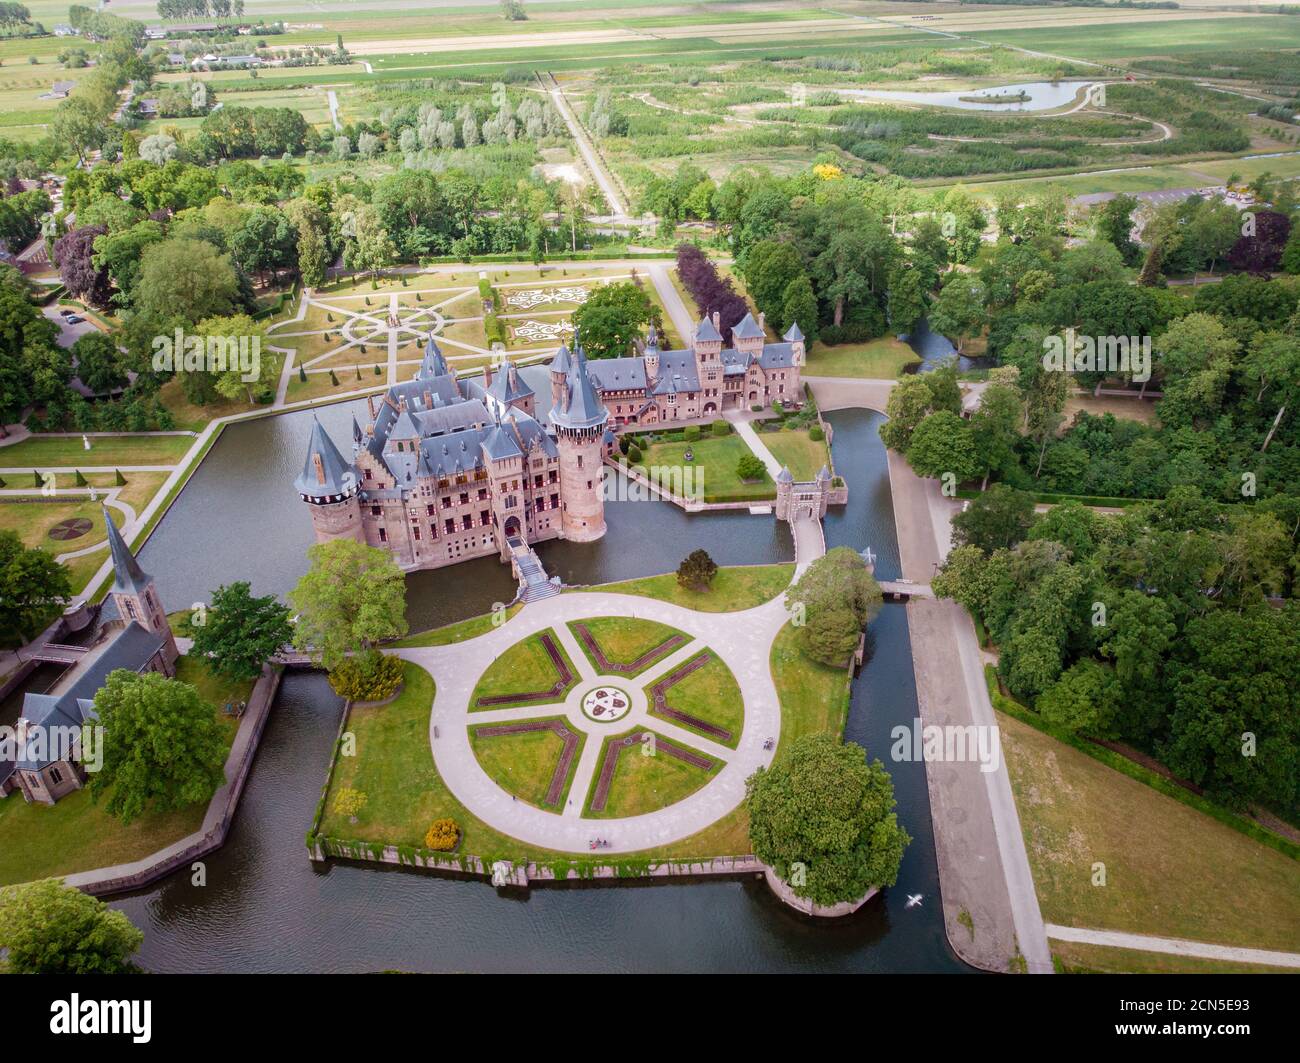 Vecchio giardino storico a Castello de Haar Paesi Bassi Utrecht in una giornata estiva luminosa, giovani uomini e donne coppia a metà età a piedi Foto Stock